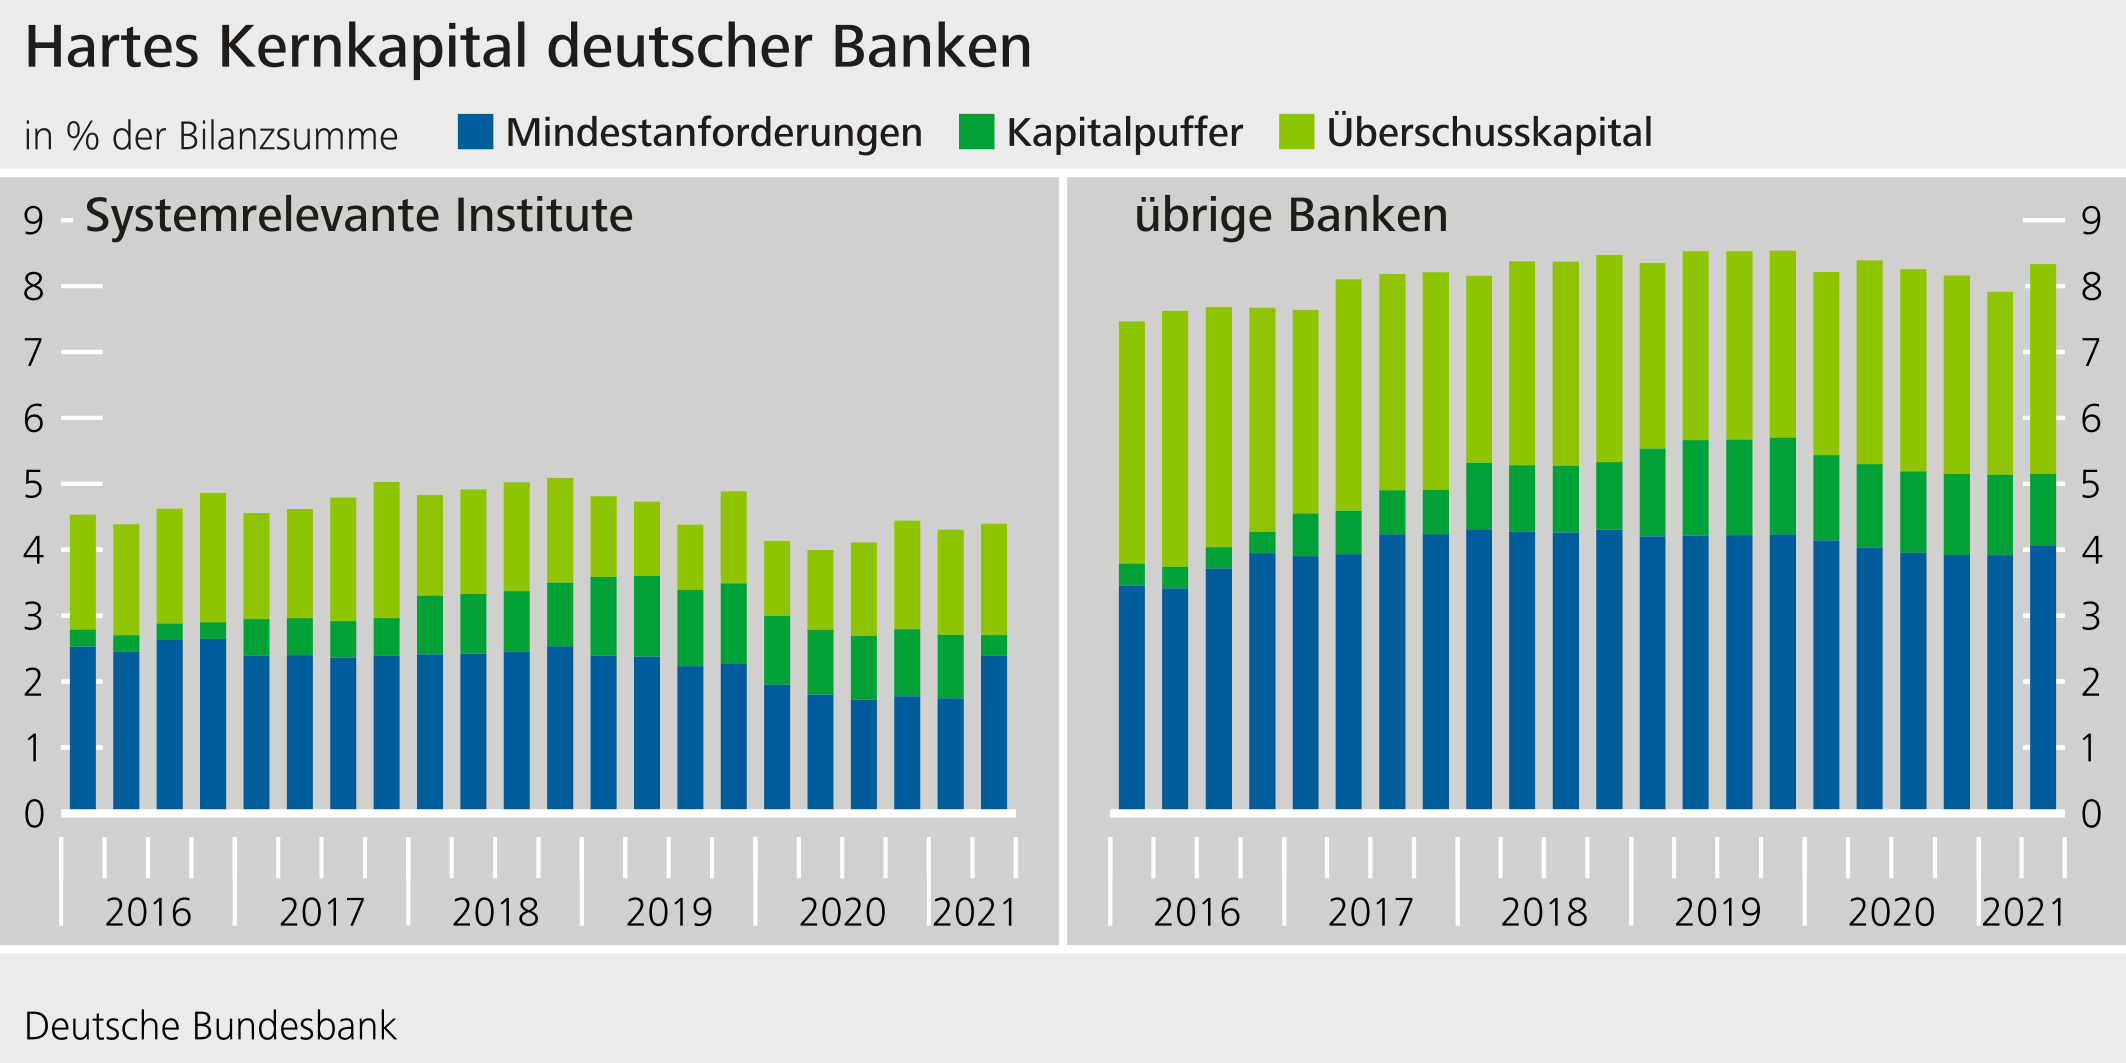 Hartes Kernkapital deutscher Banken